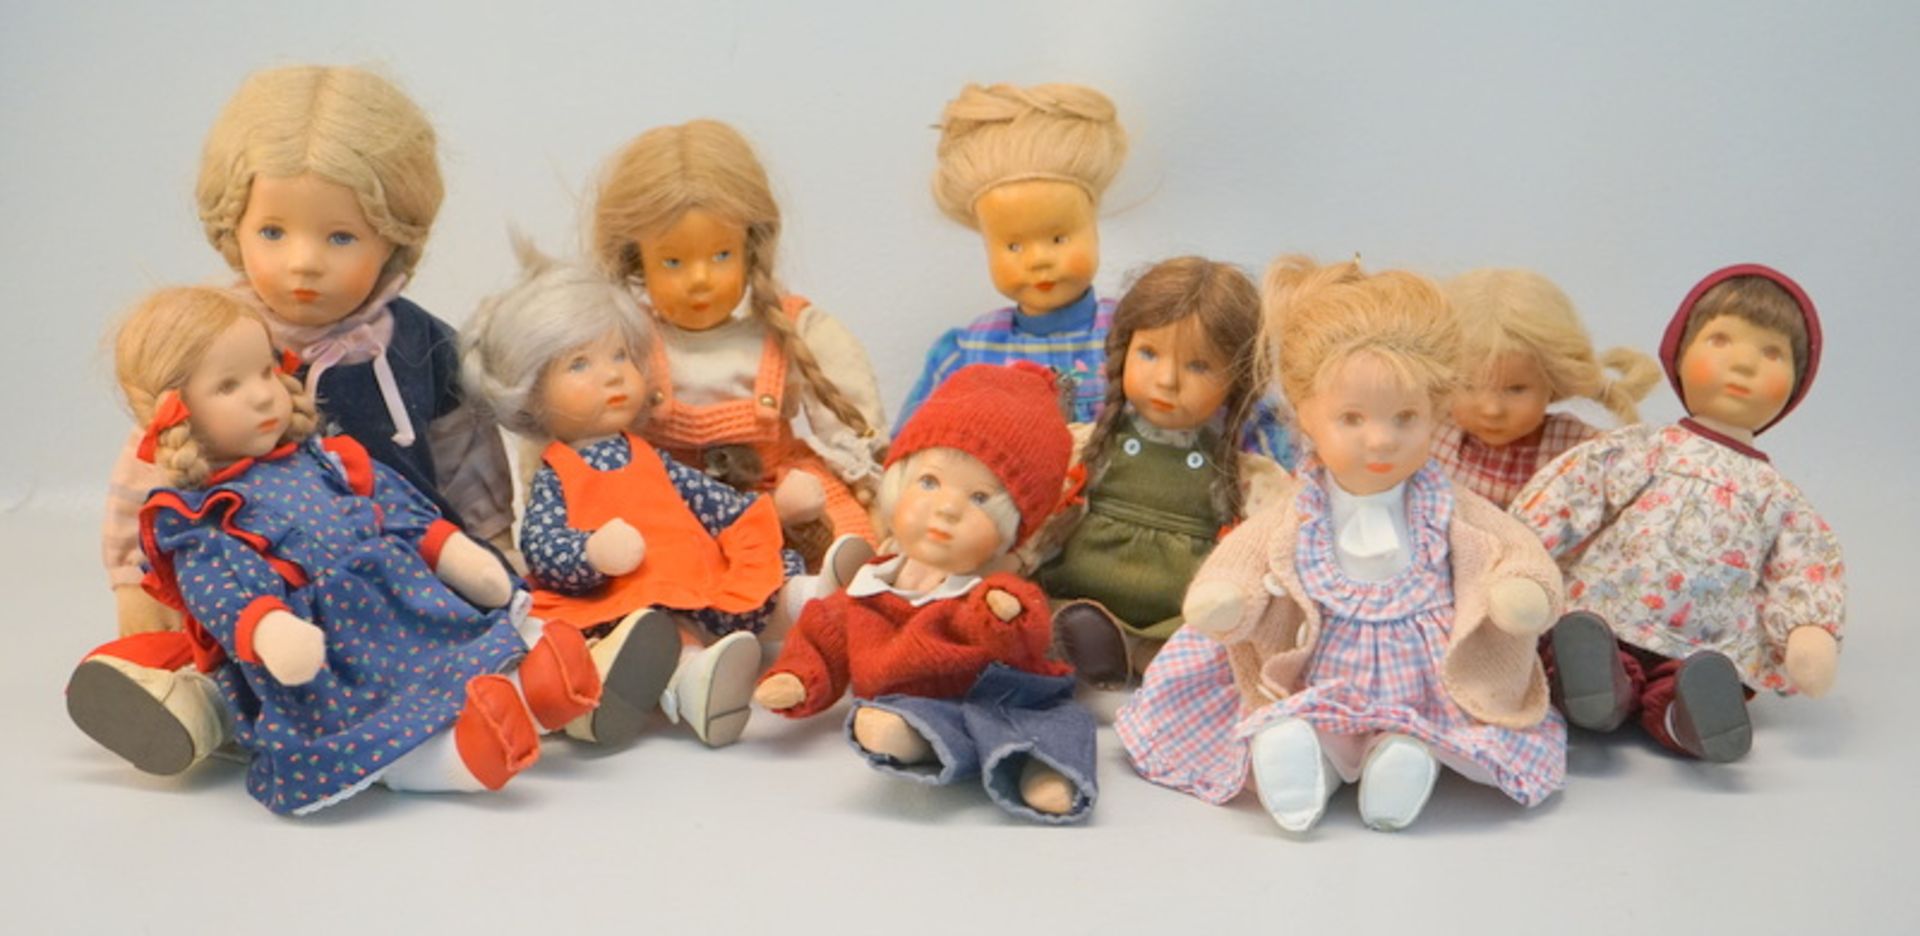 Sammlung von 8 Käthe Kruse Puppen